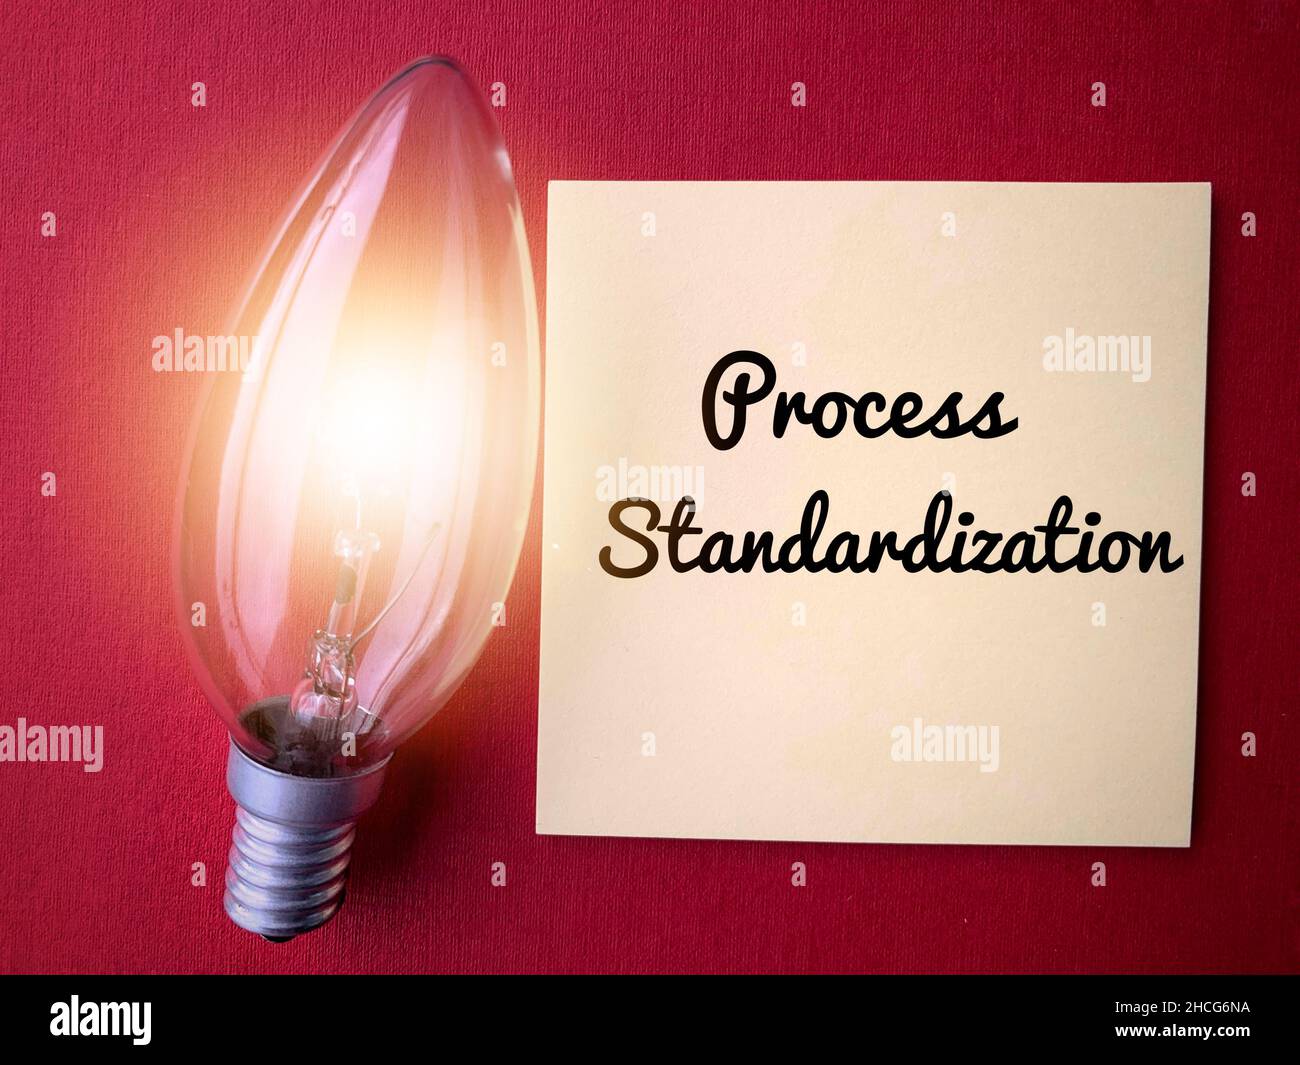 Standardizzazione del processo scritta su una nota adesiva con lampadina a sgranatura. Concetto e idee di business Foto Stock